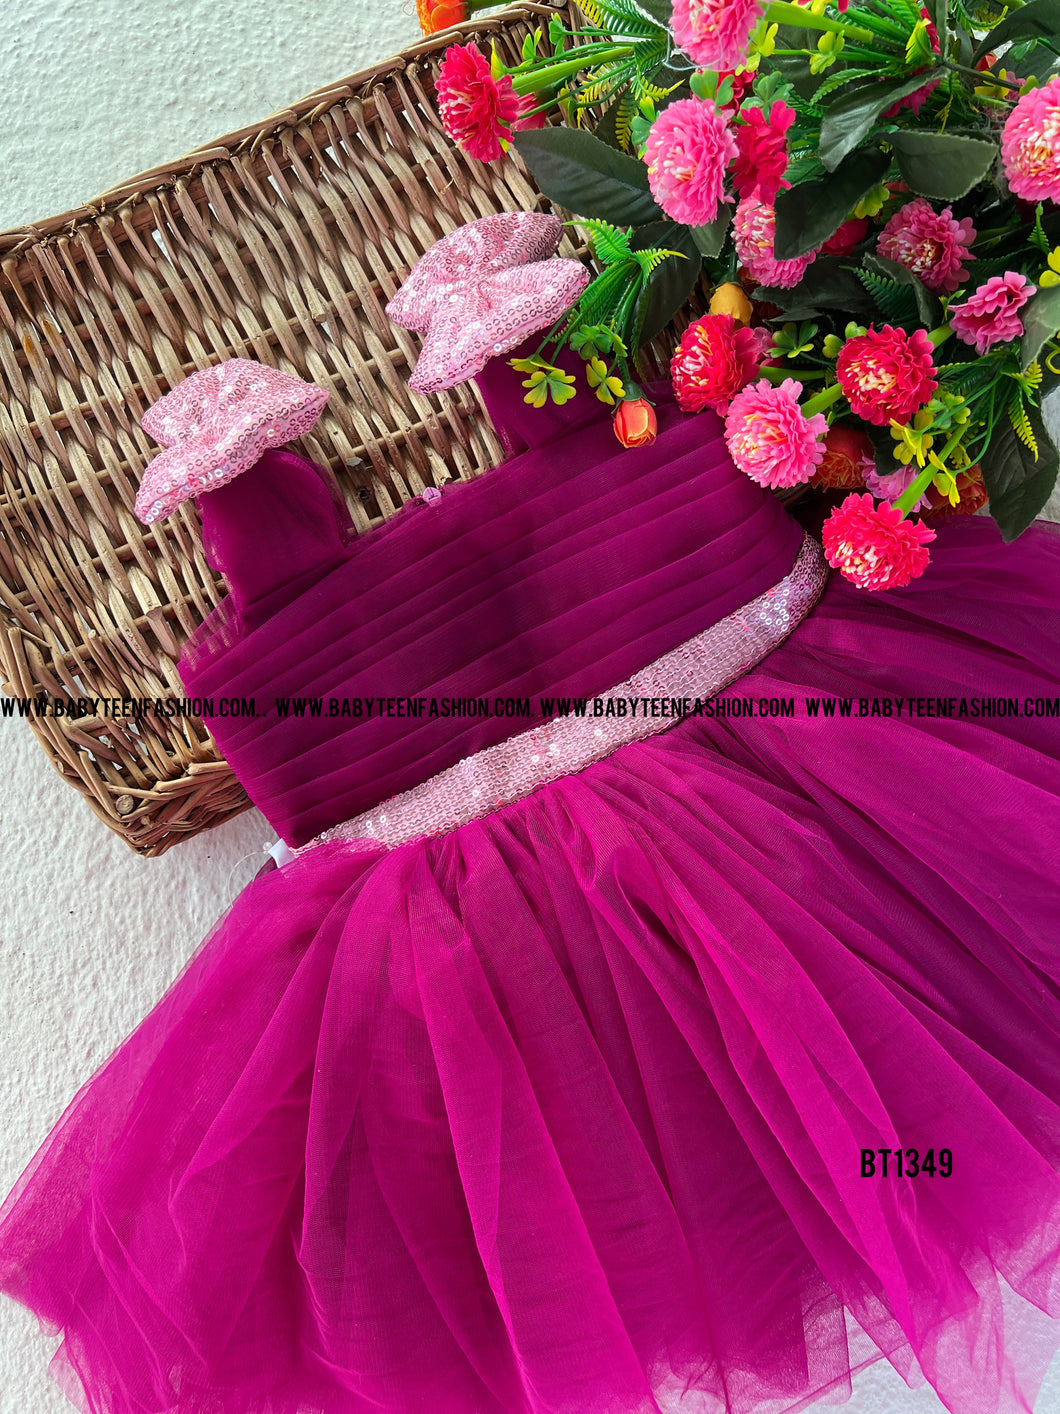 BT1349 Magenta Magic Flounce Dress - A Fairy Tale for Your Little Star